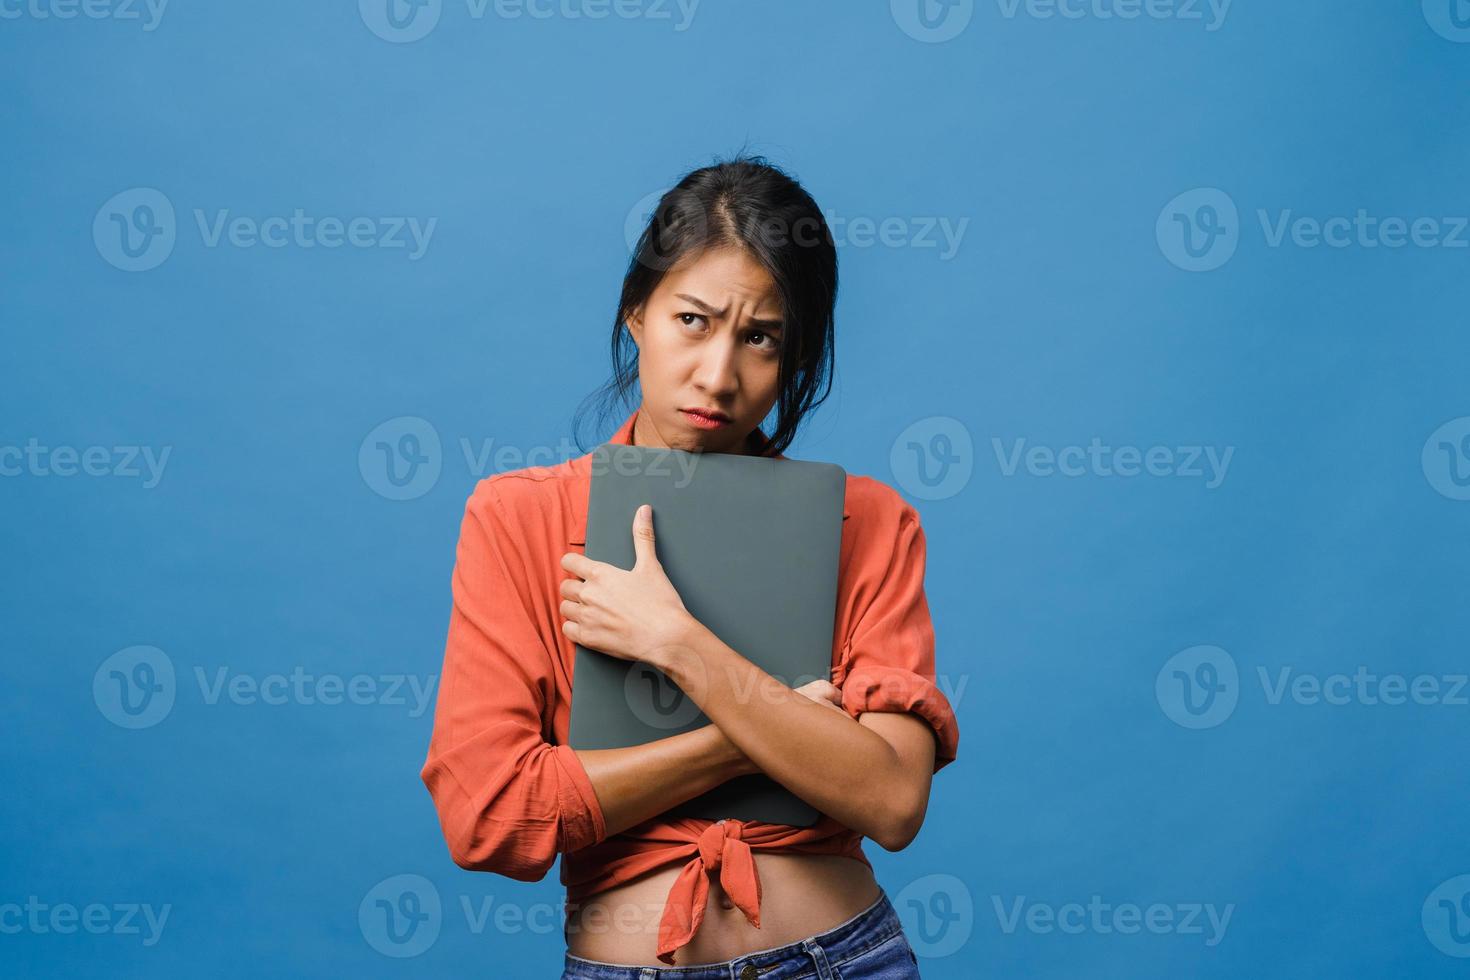 une jeune femme asiatique tient un ordinateur portable avec une expression négative, des cris excités, des cris émotionnels en colère dans un tissu décontracté et se tient isolée sur fond bleu avec un espace de copie vierge. concept d'expression faciale. photo